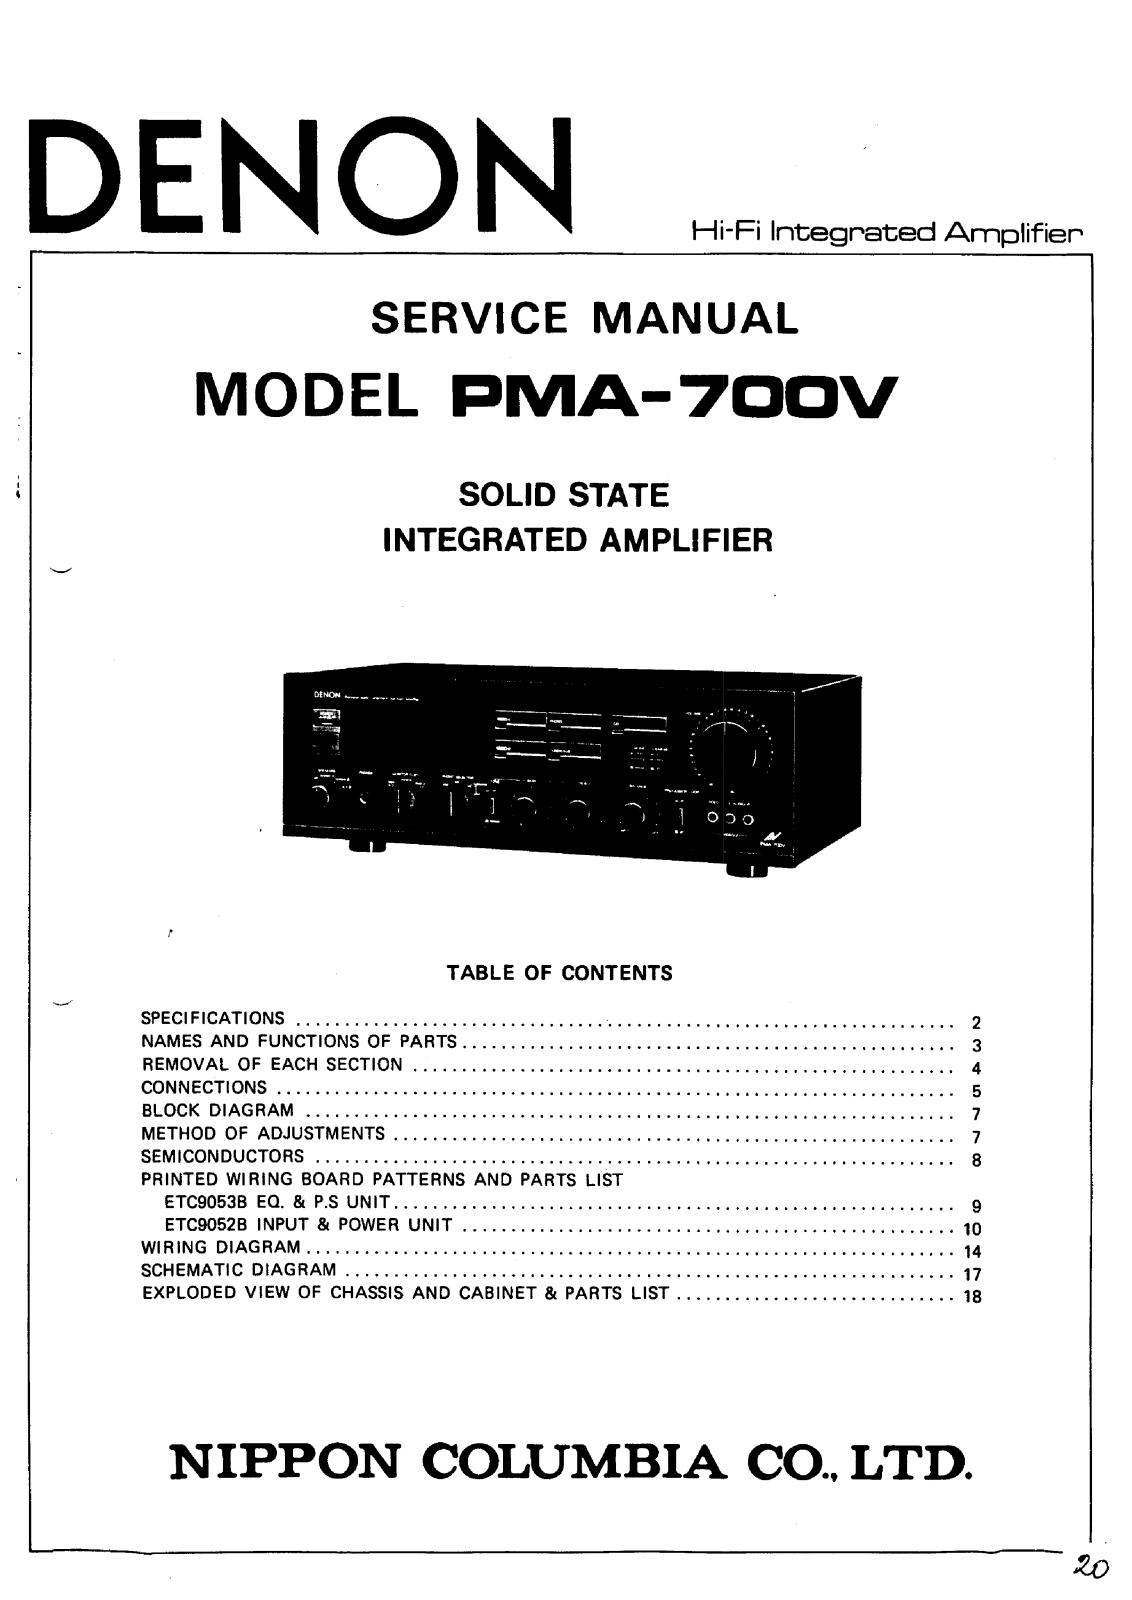 Denon PMA-700V Service Manual 1